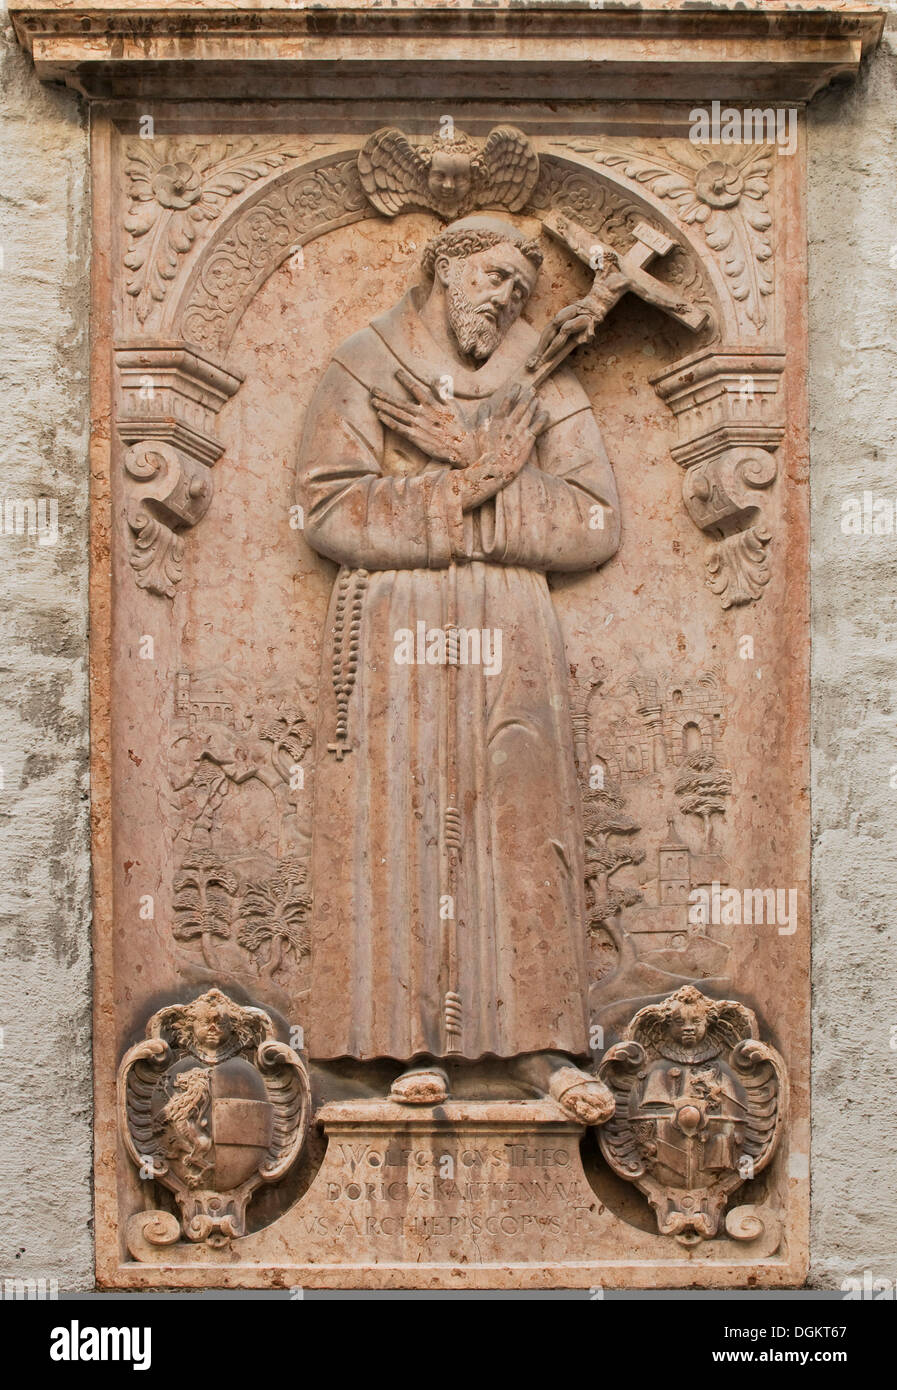 Soulagement, François d'assise, avec une inscription et les armoiries de l'archevêque Wolf Dietrich von Raitenau Banque D'Images